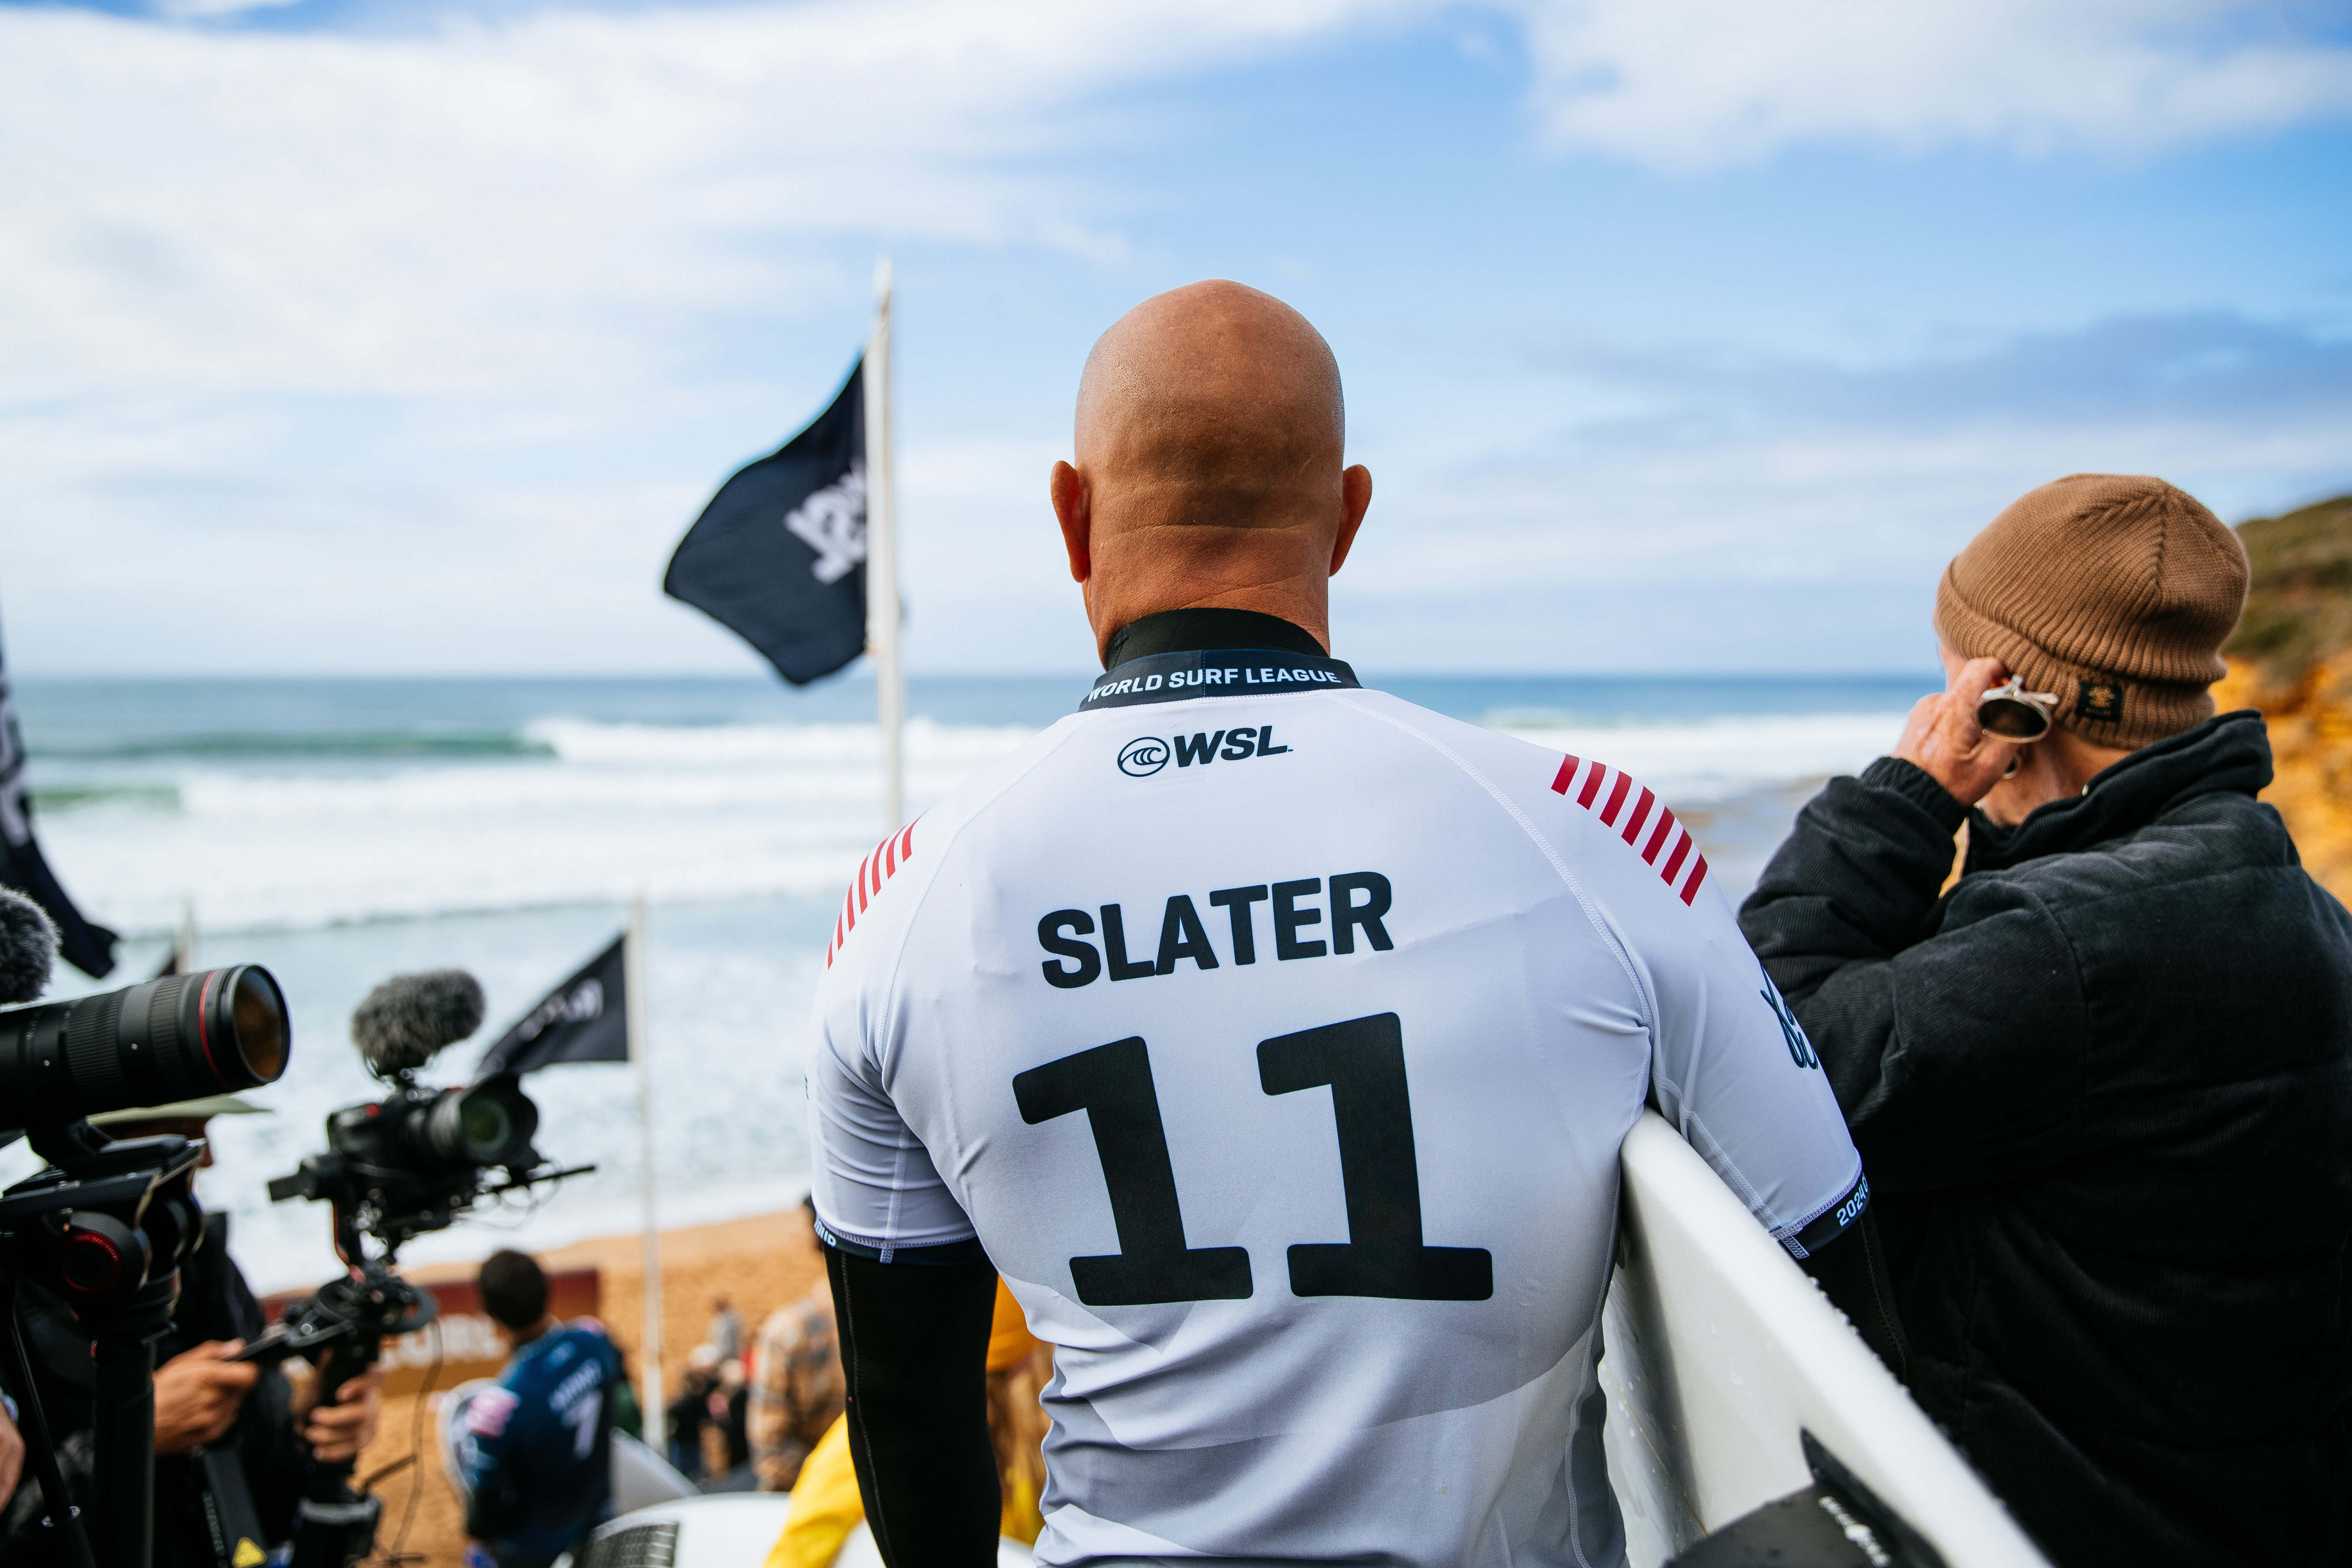 Slater was emotional post surf.